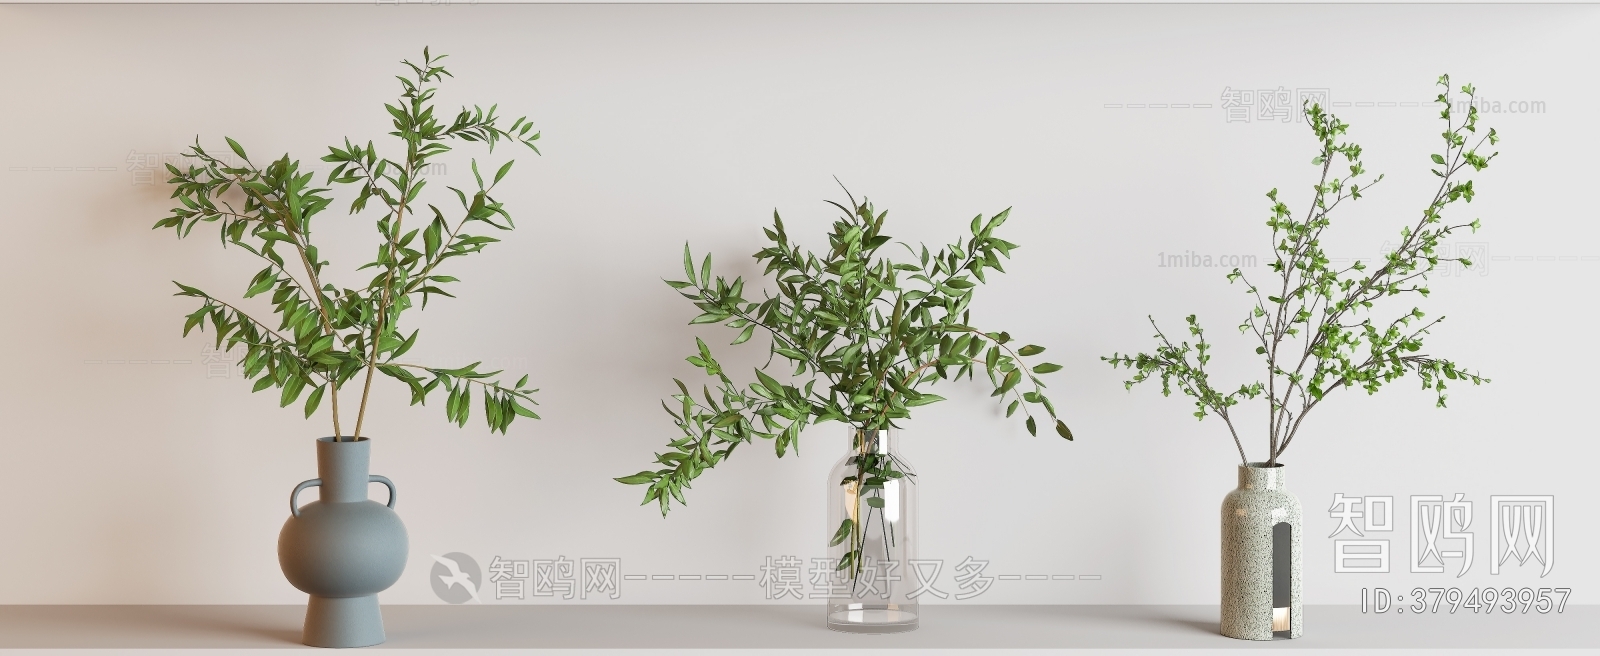 现代桌面水生植物花瓶